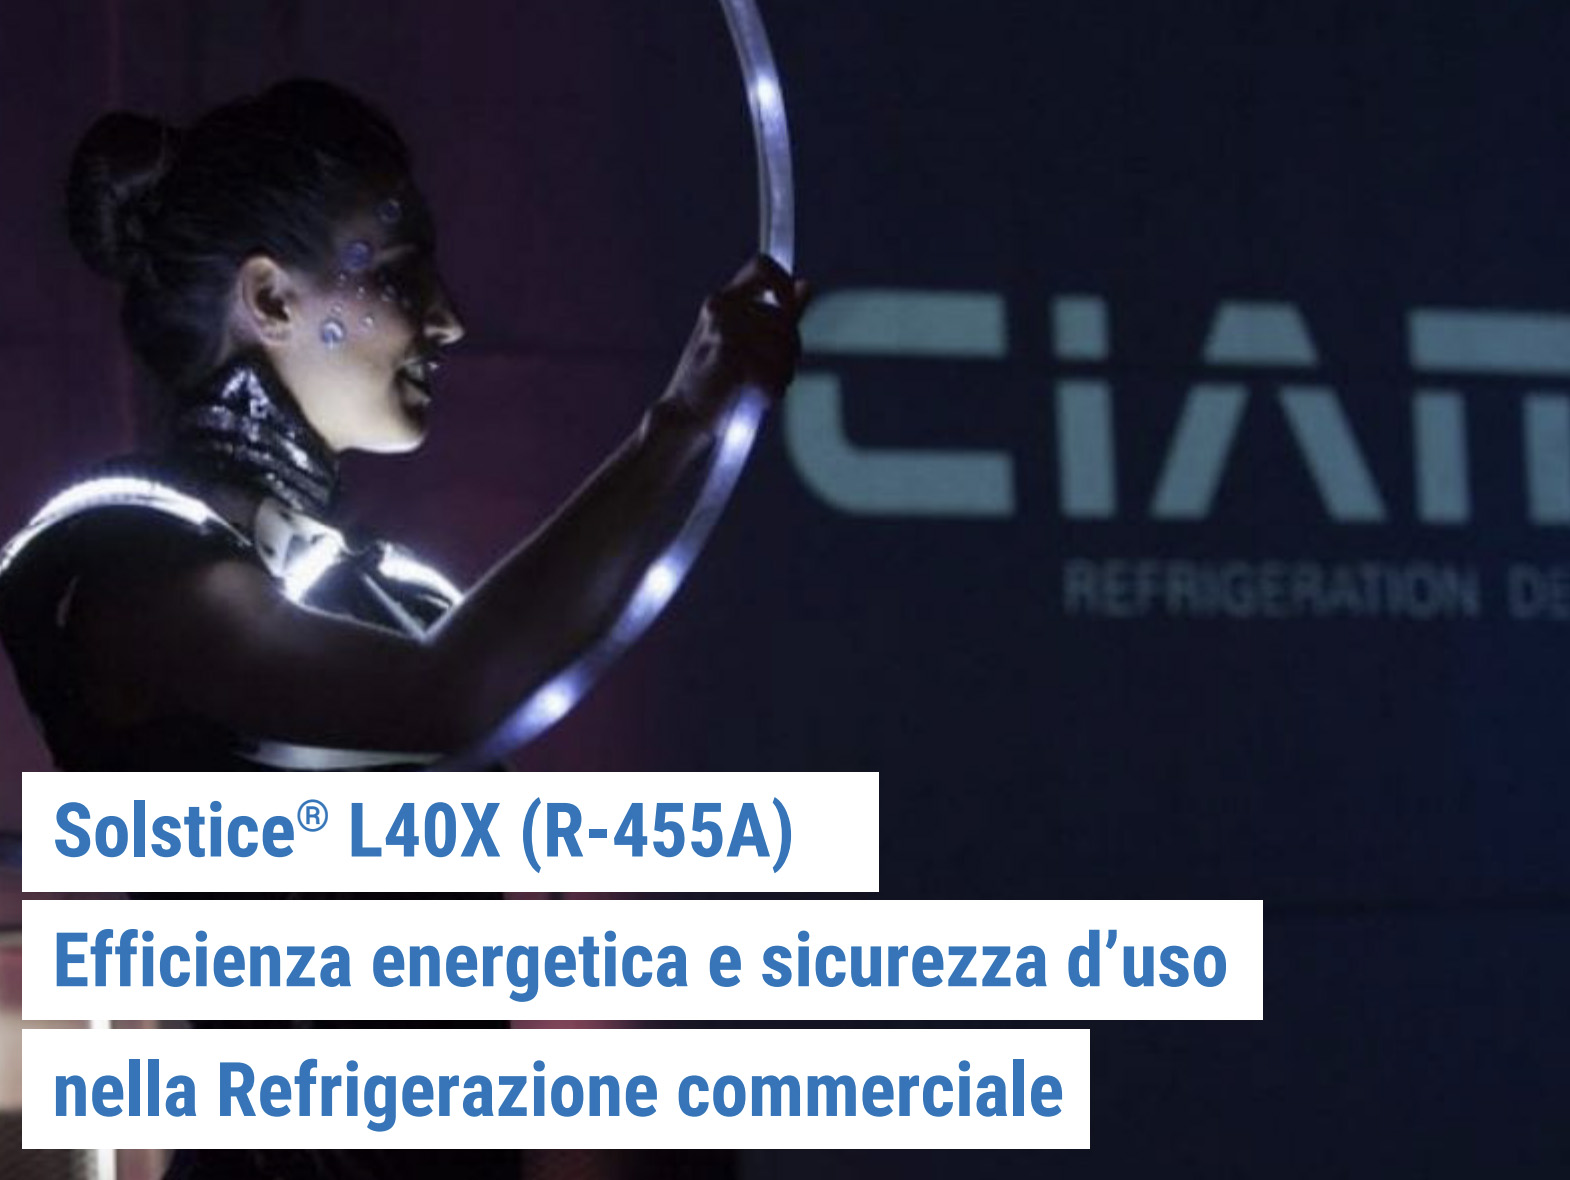 Caso studio CIAM: Solstice L40X (R455A) in refrigerazione commerciale